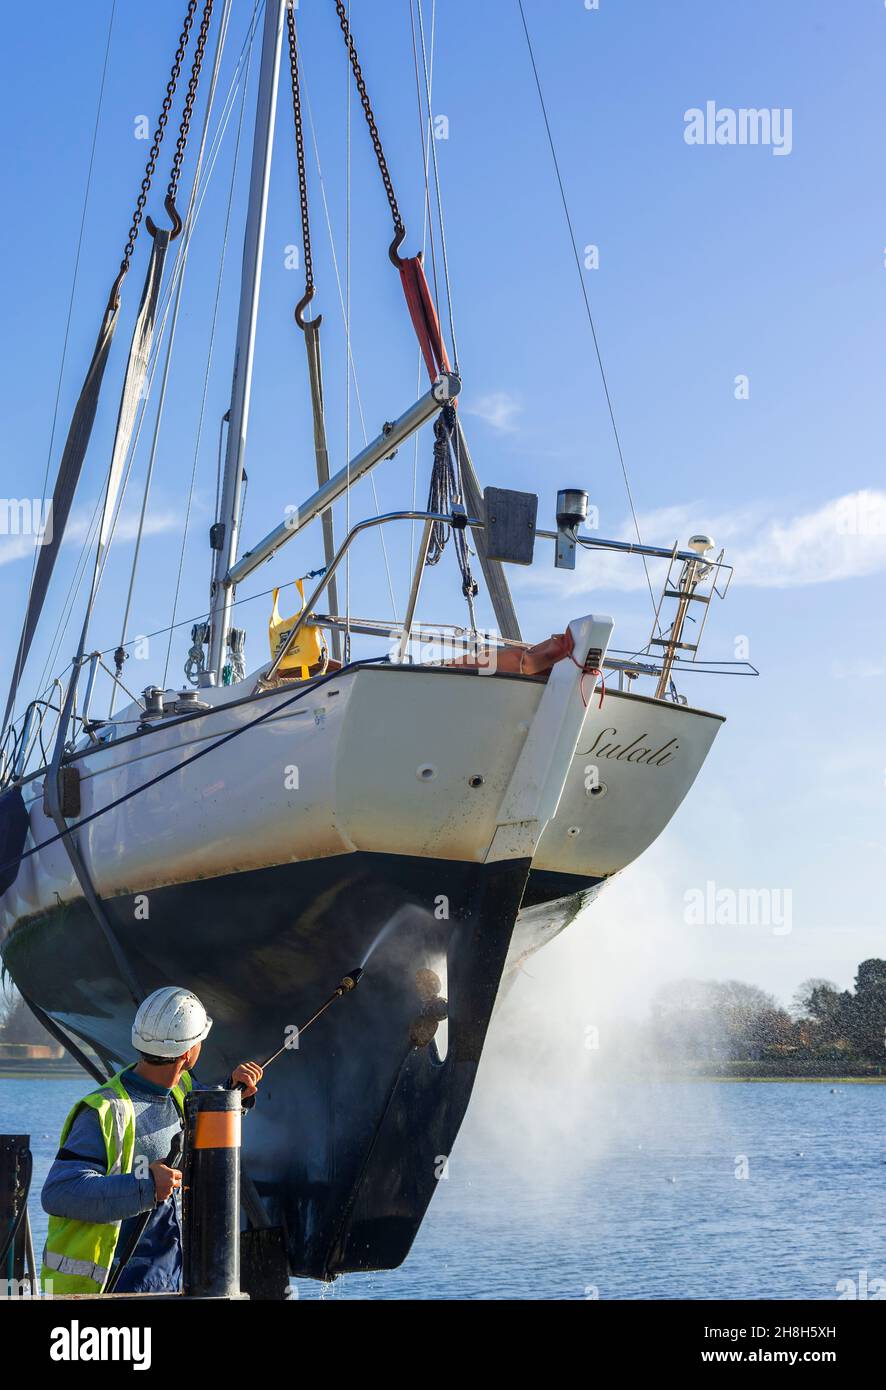 Ausgebockte Yacht, Contessa 26, in Schlingen, der Rumpf wird druckgewaschen, um Unkraut zu entfernen, am Bosham Quay, Chichester Harbour, West Sussex, England, Großbritannien Stockfoto